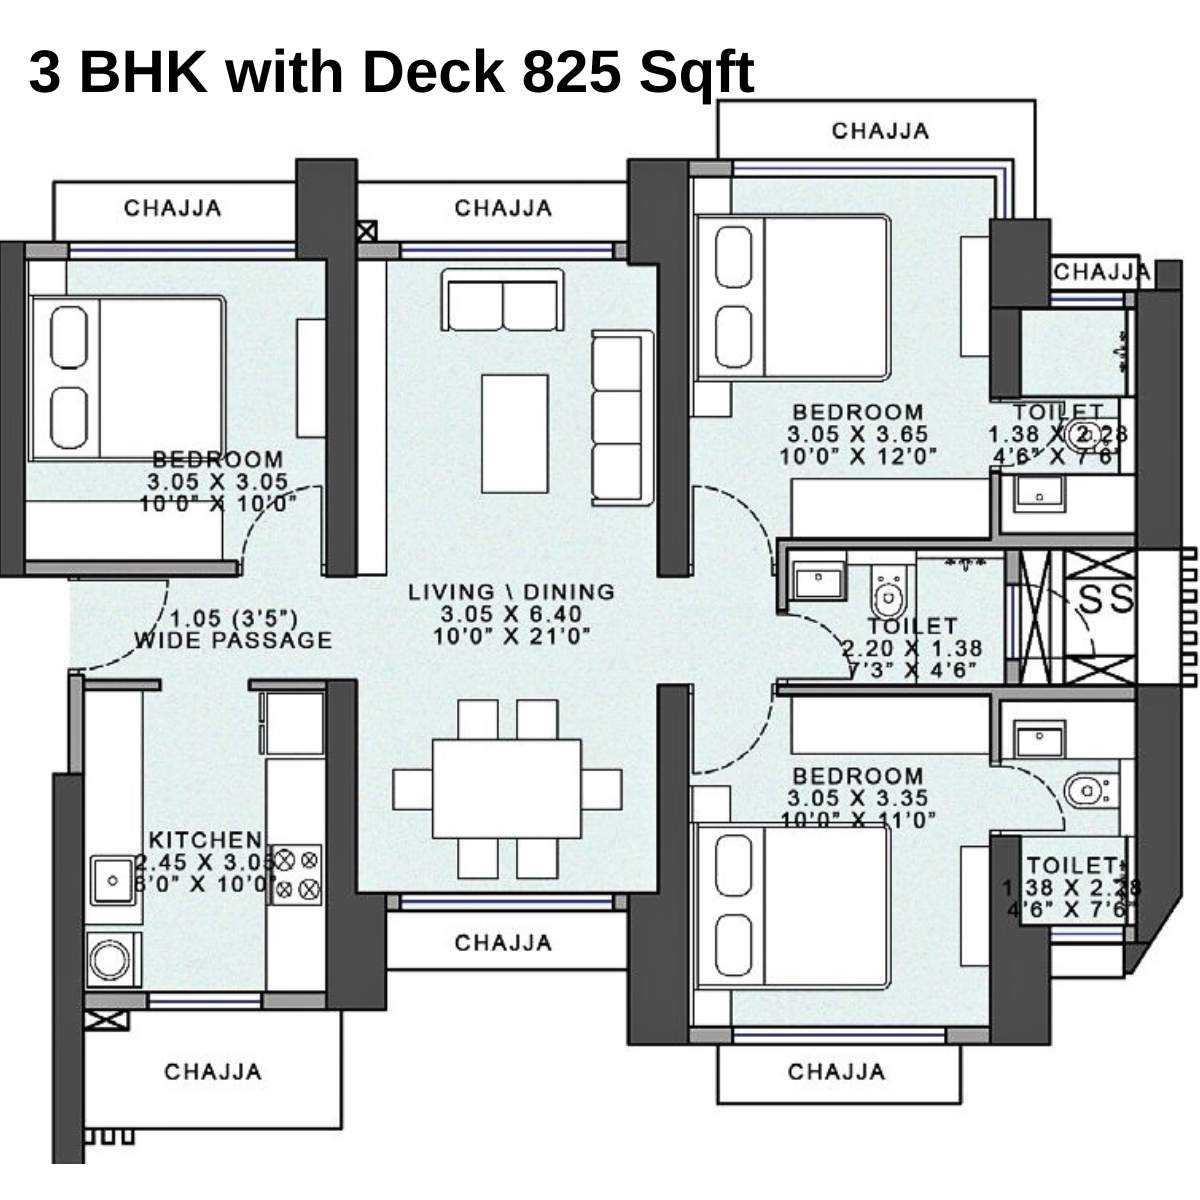 Wadhwa-Atmosphere-Floor-Plan-Tower-Solis-3-BHK-with-Deck-825-Sqft